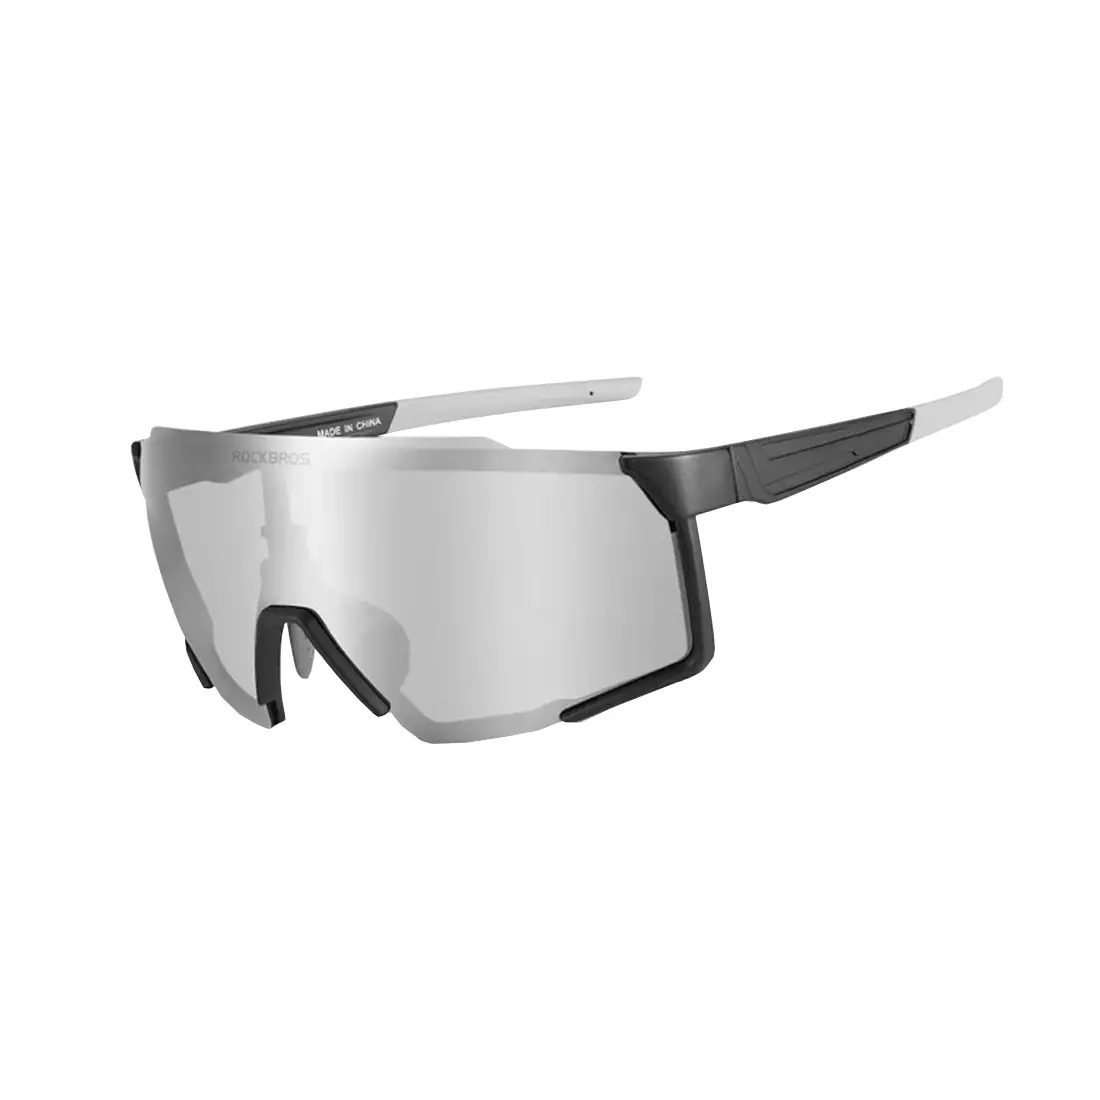 Rockbros SP22BK Fahrrad / Sportbrille mit polarisiertem schwarz-grau